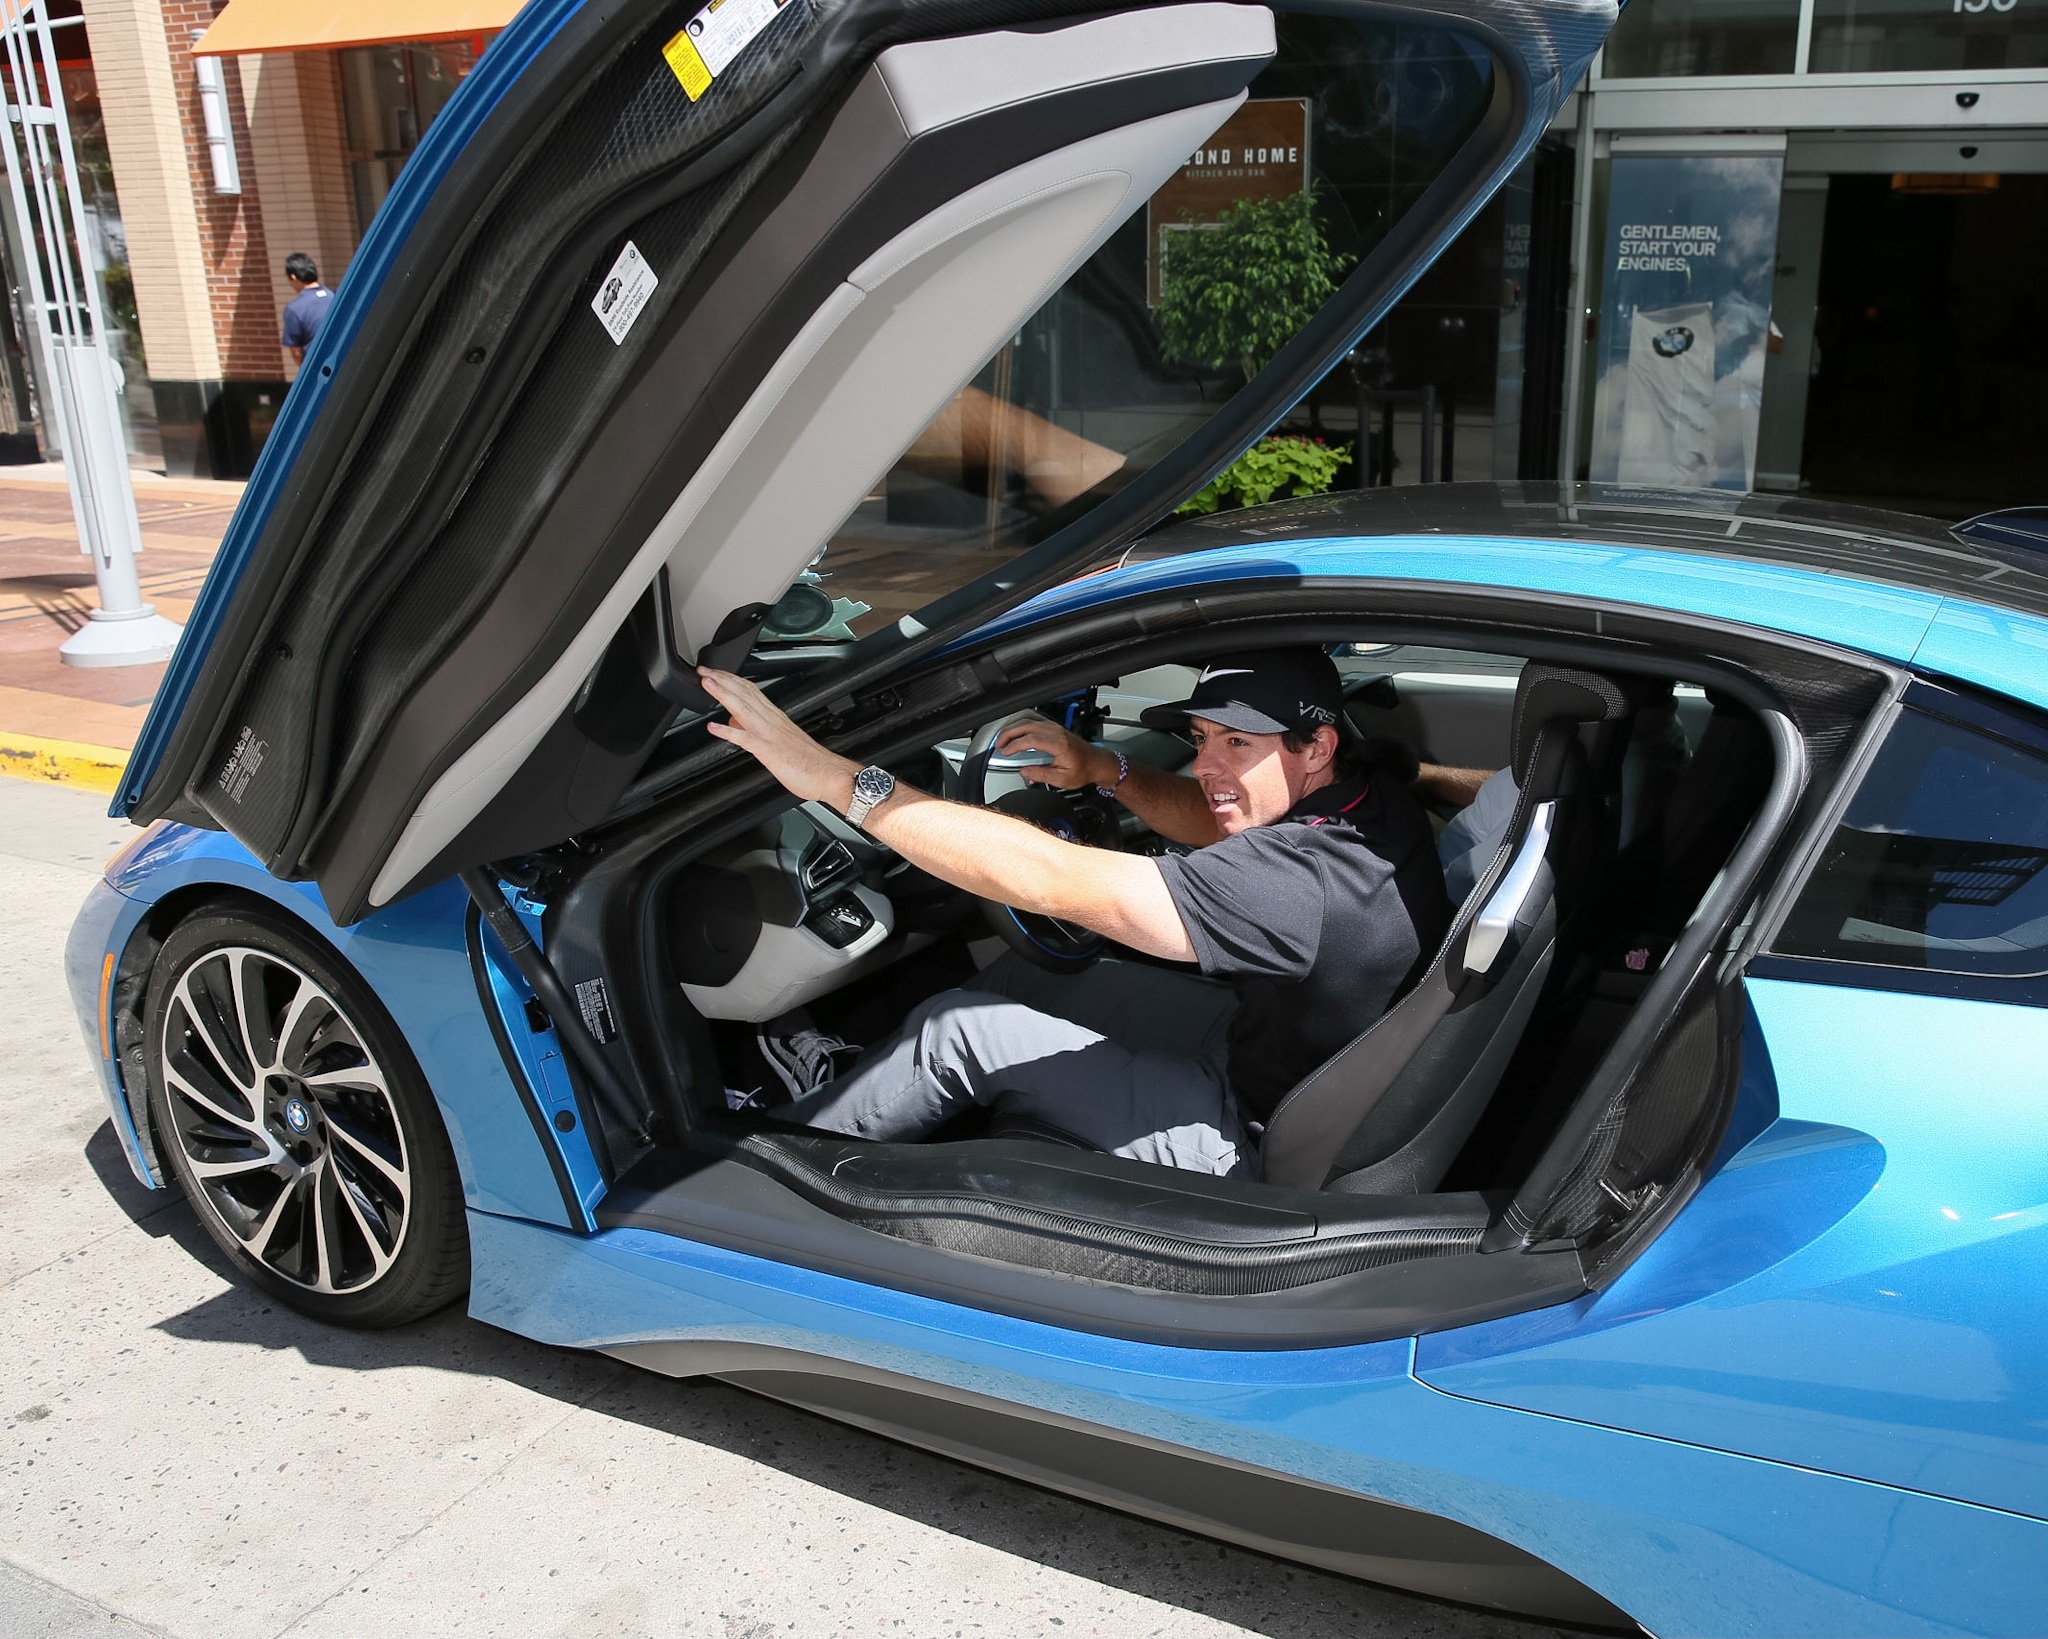  Rory Mclloroy si distingue alla guida di una BMW i8 al BMW Championship 2014